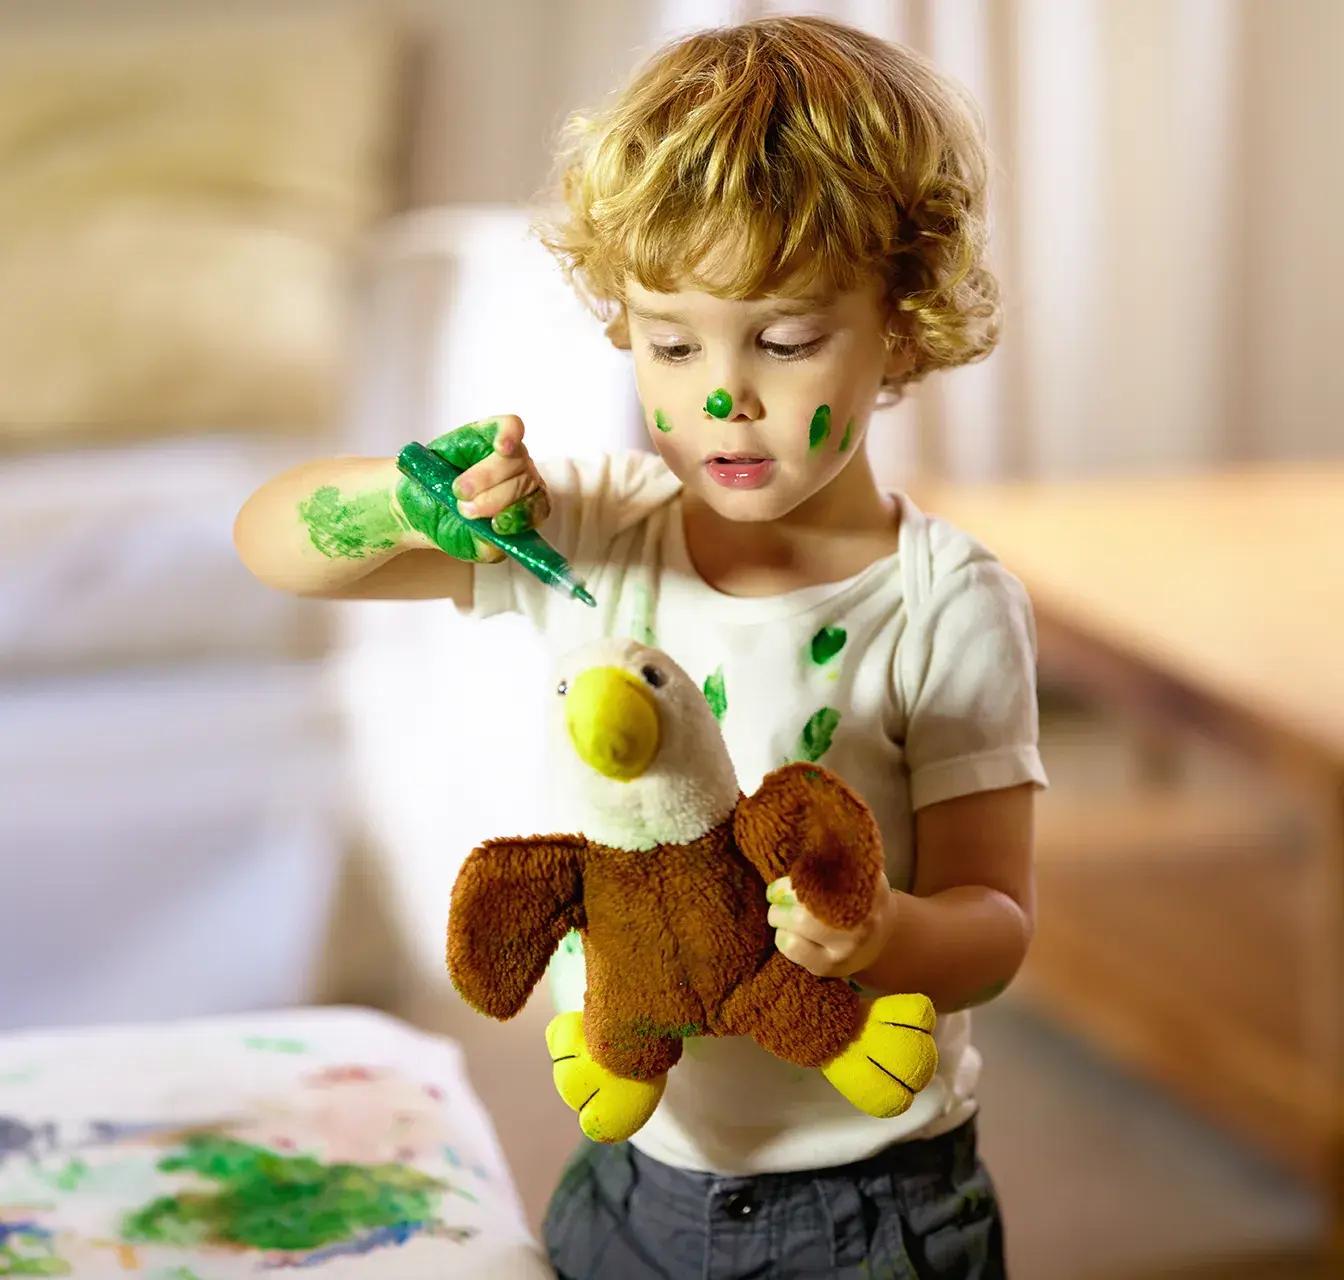 Момче със зелена боя се забавлява, като боядисва и лицето си.